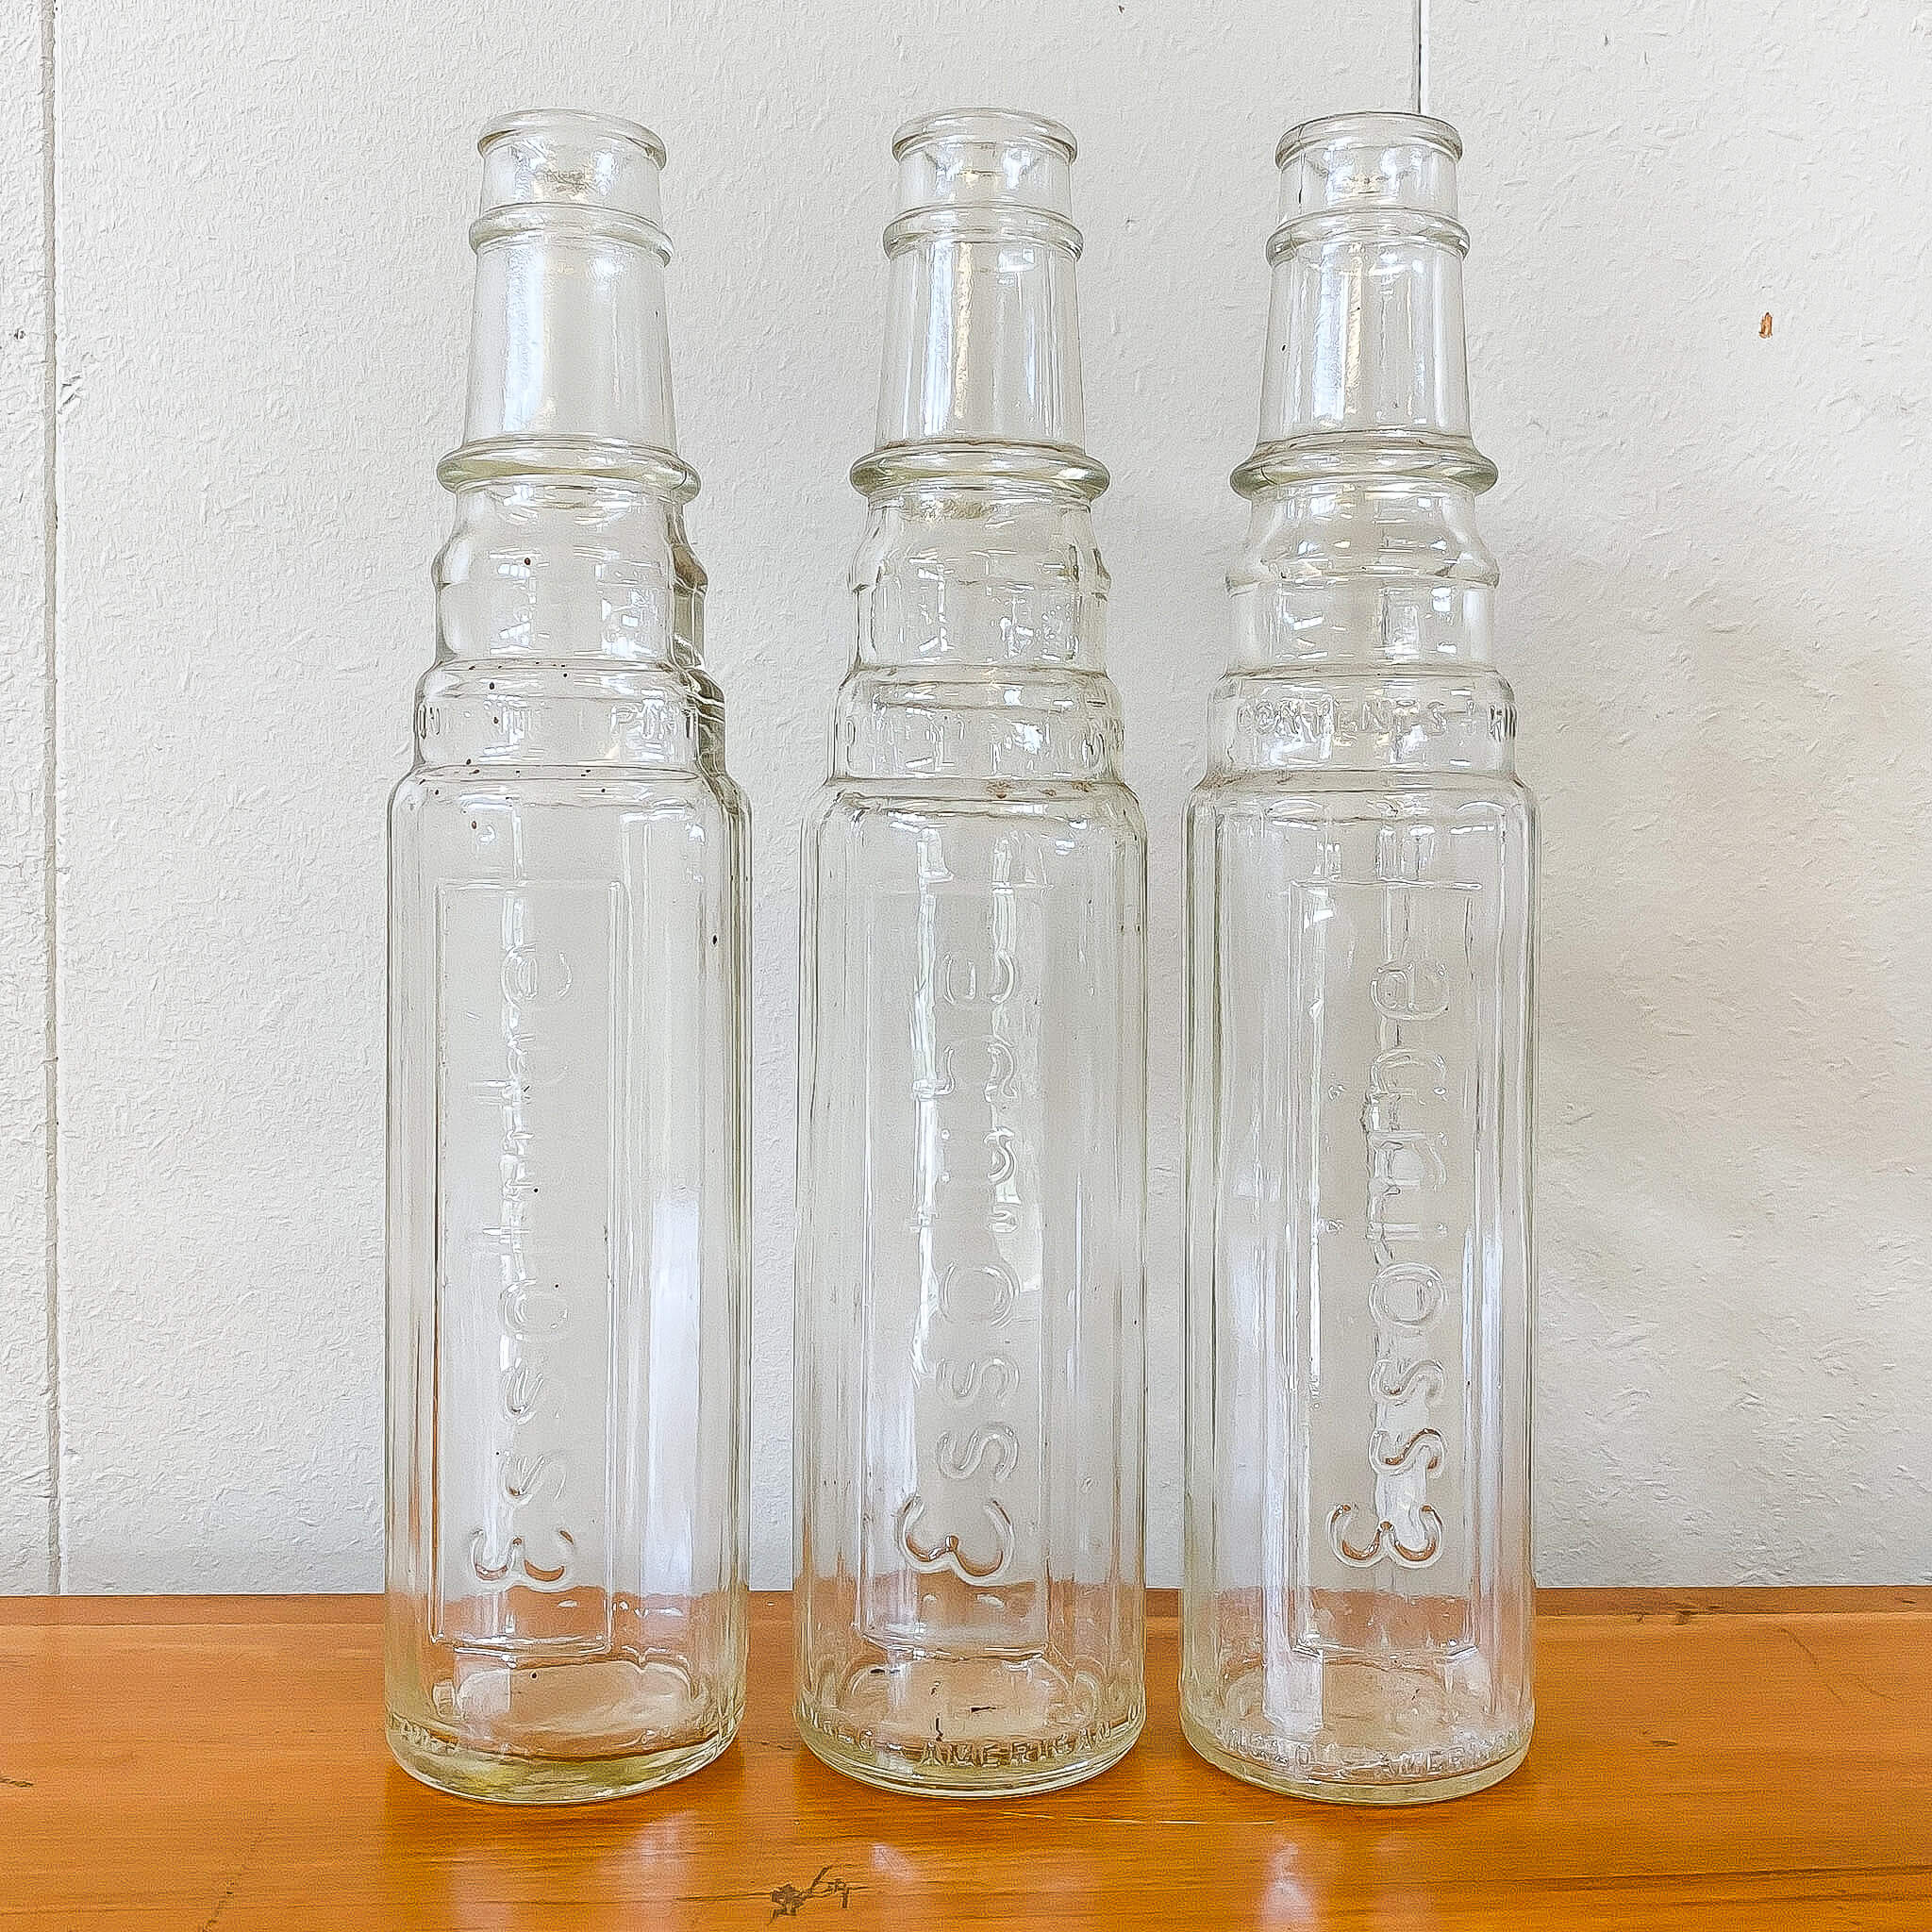 Esso Oil Bottles